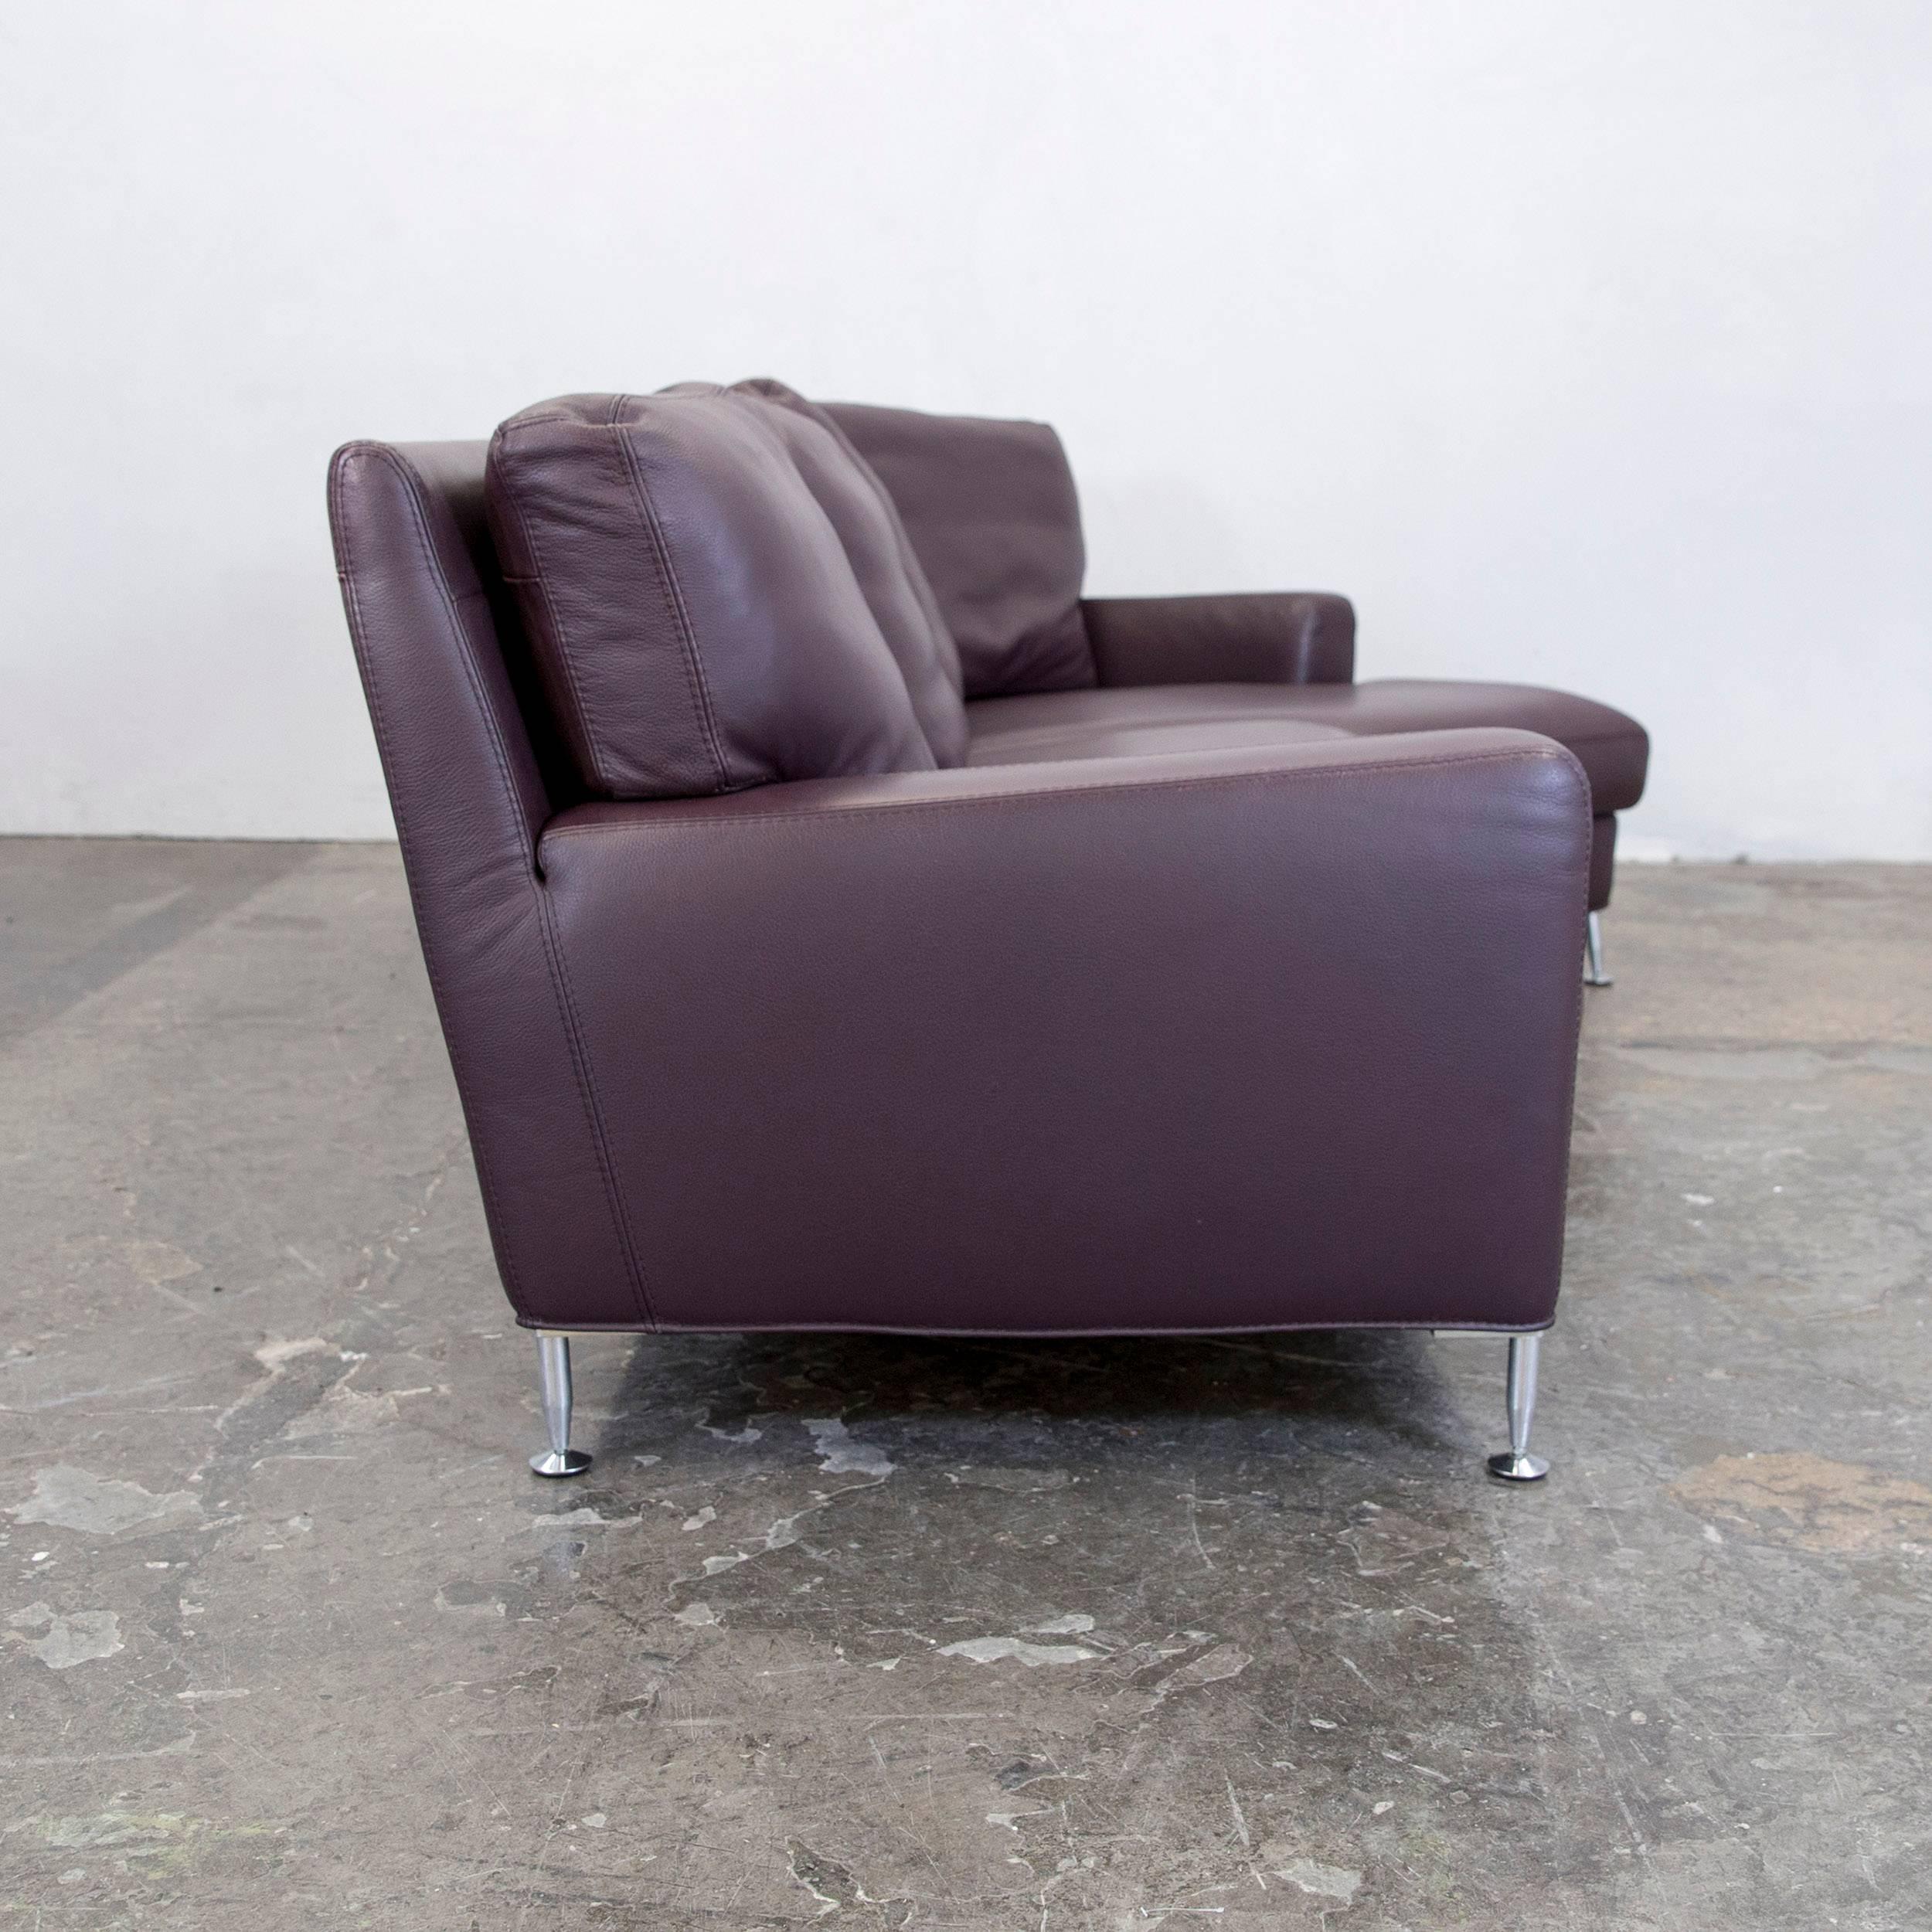 Aubergine Violet Corner Sofa Couch Modern Design 3